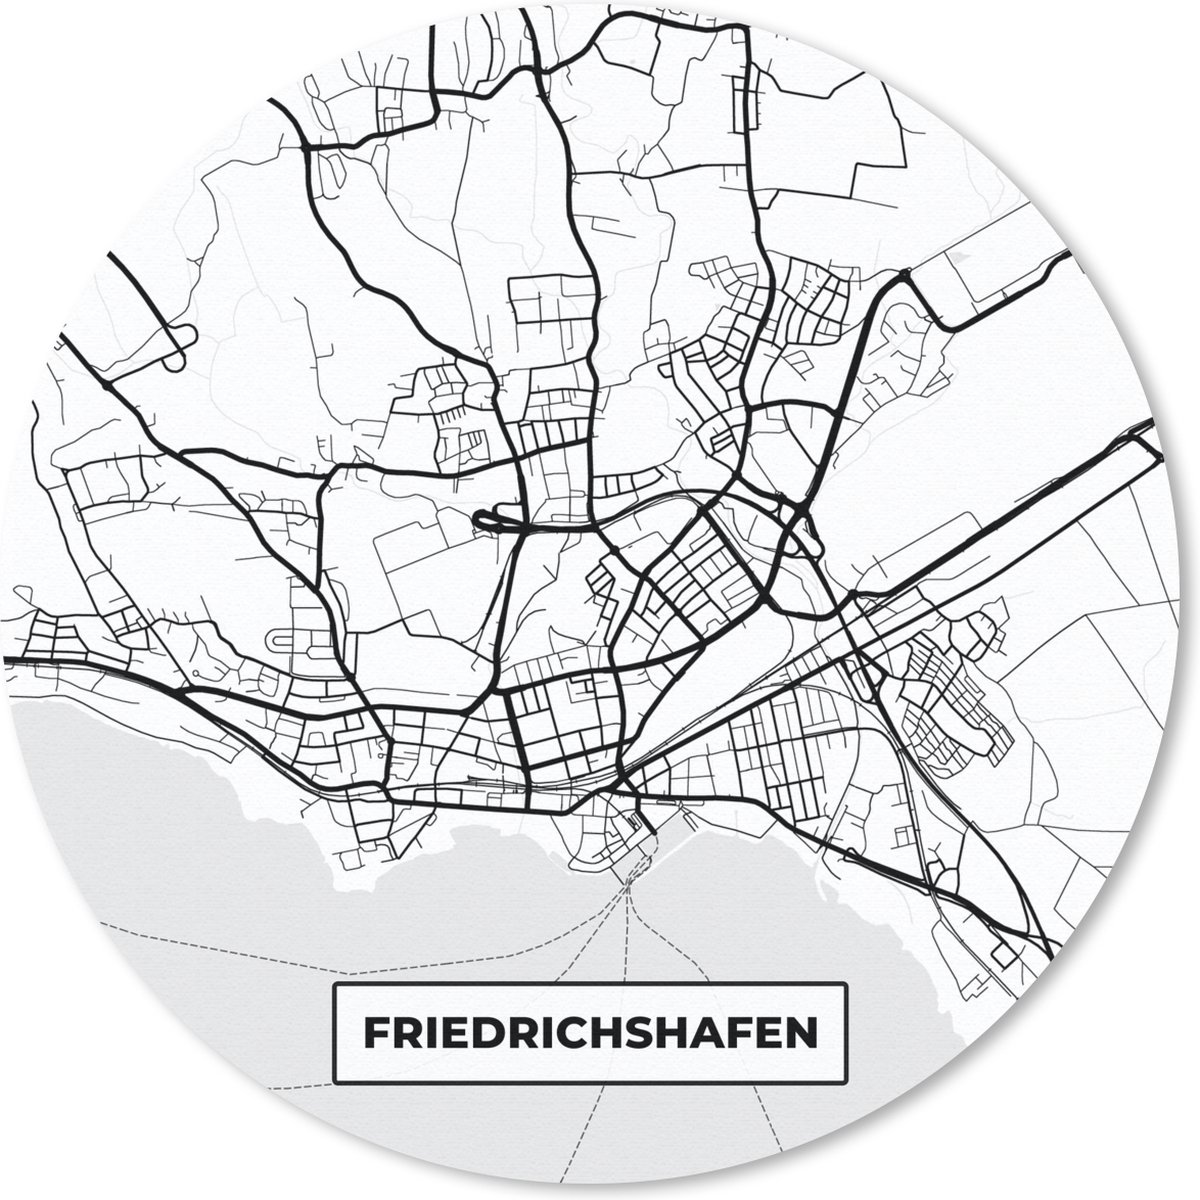 Muismat - Mousepad - Rond - Plattegrond - Friedrichshafen - Kaart - Stadskaart - 30x30 cm - Ronde muismat